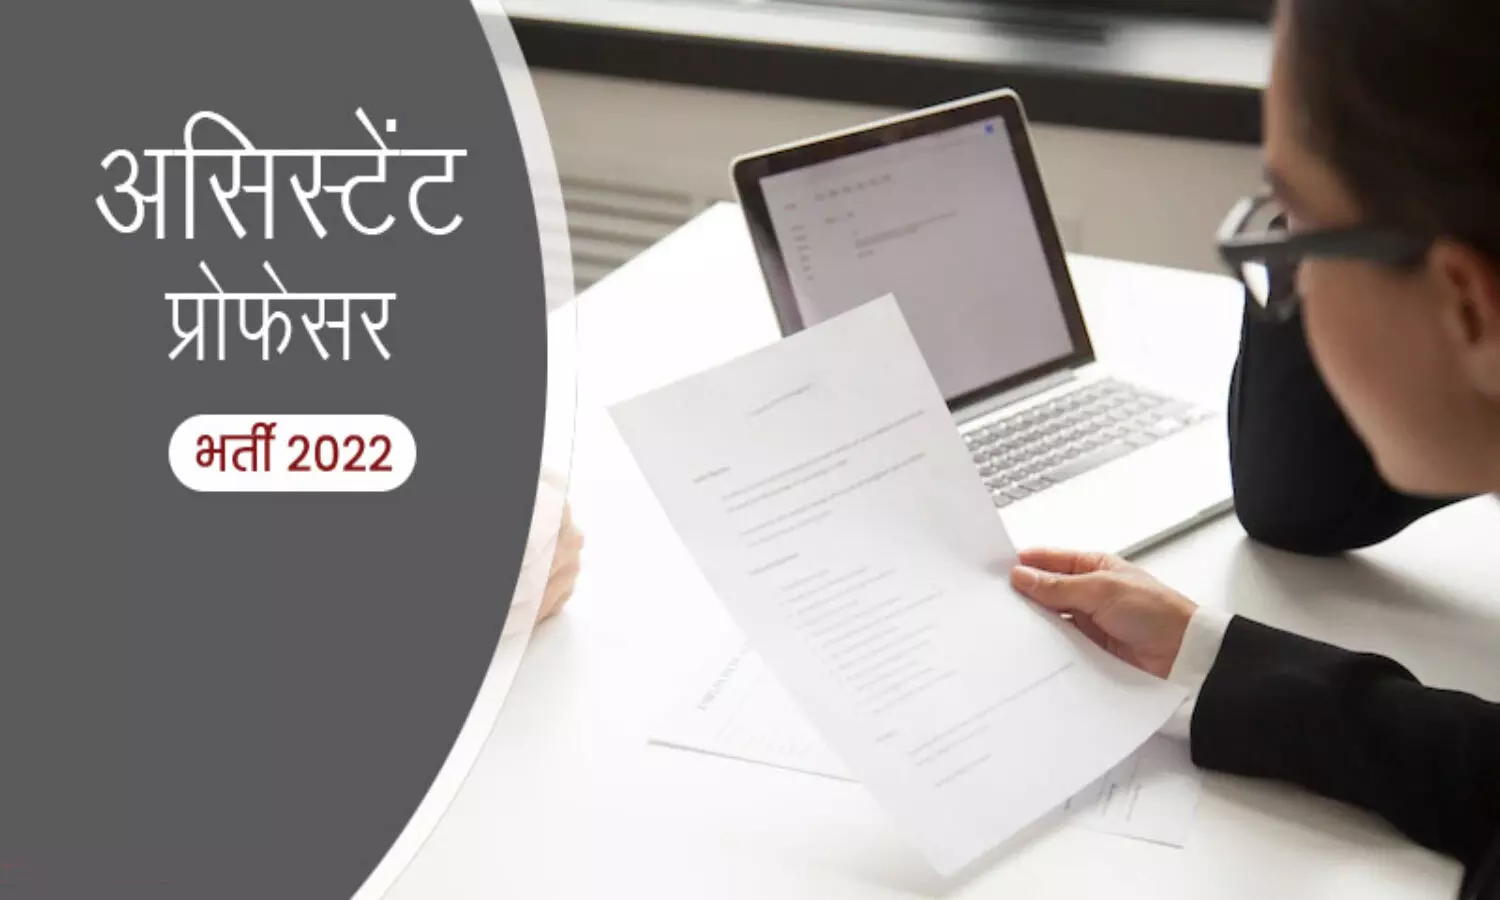 Assistant Professor Bharti 2022 : प्रदेश के कॉलेजों में असिस्टेंट प्रोफेसरों की होगी भर्ती, तैयारी में जुटा उच्च शिक्षा विभाग